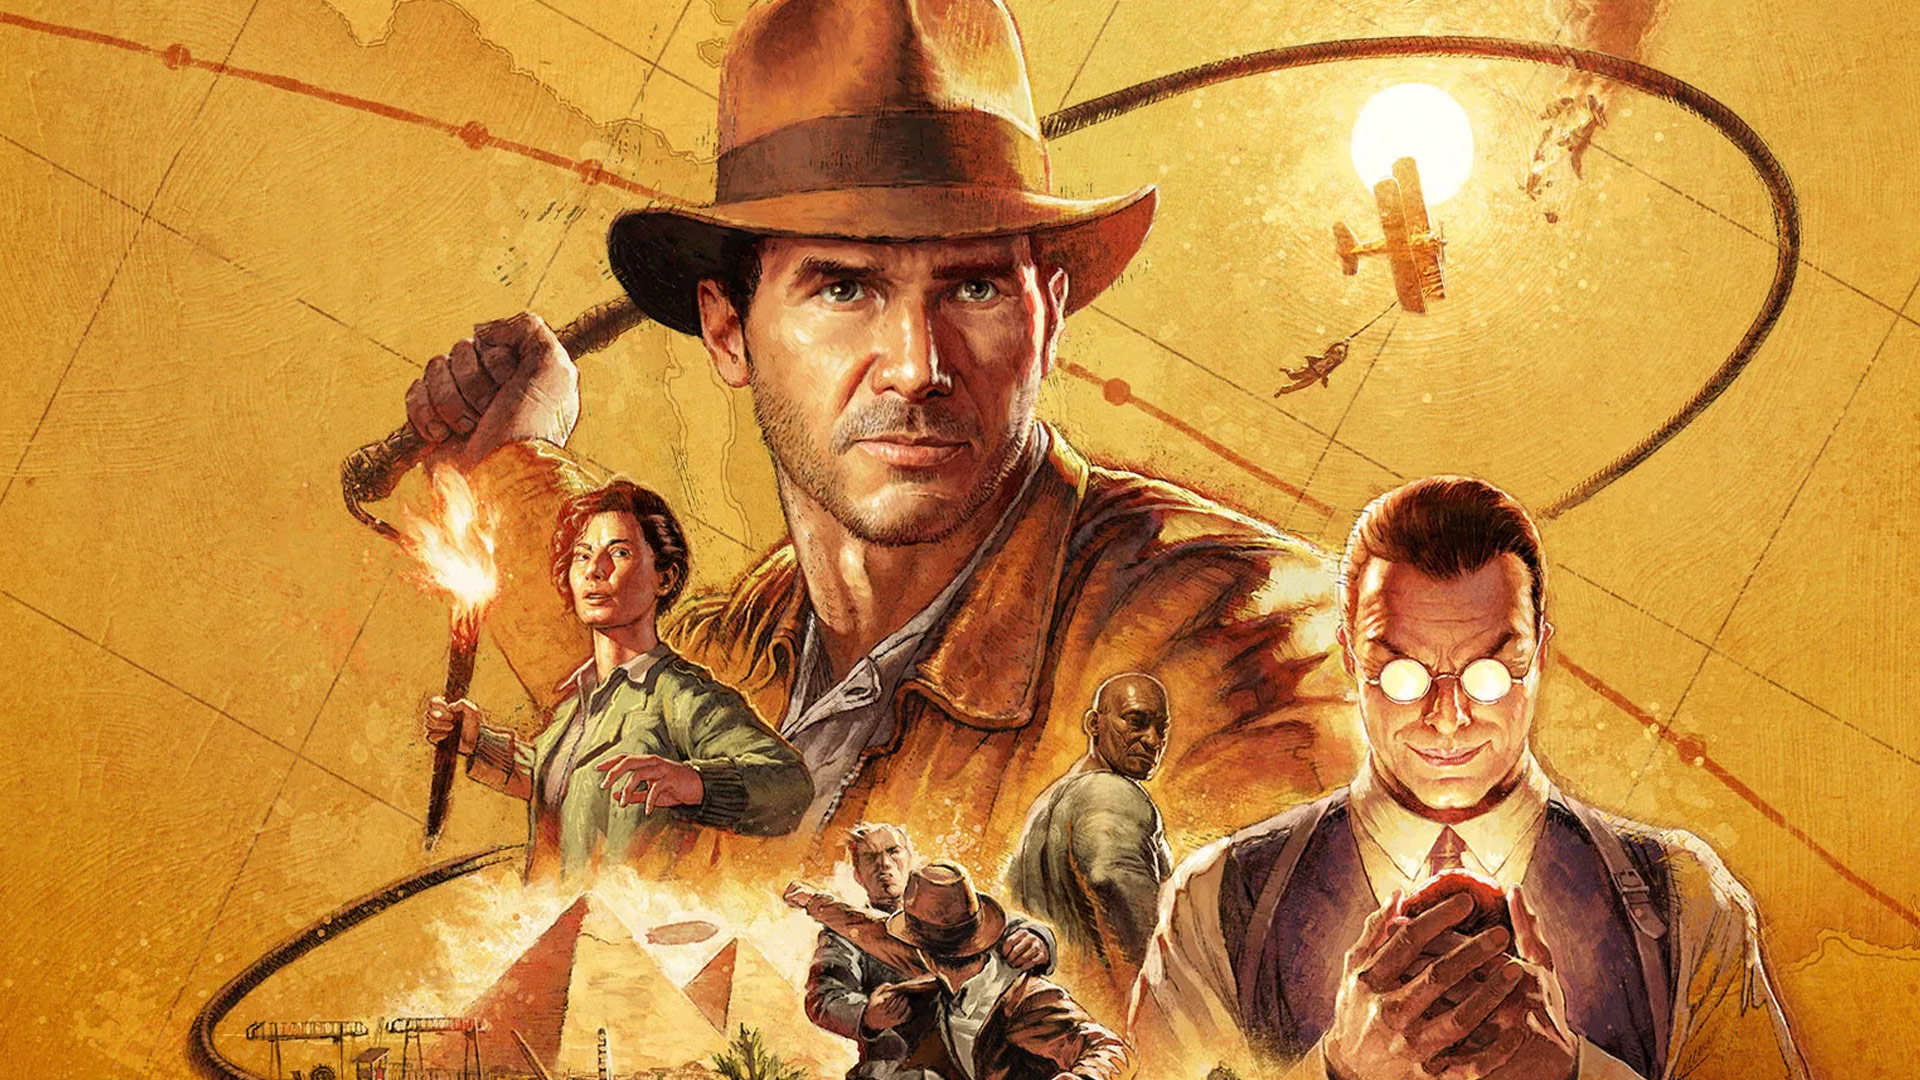 Indiana Jones and the great circle key visual